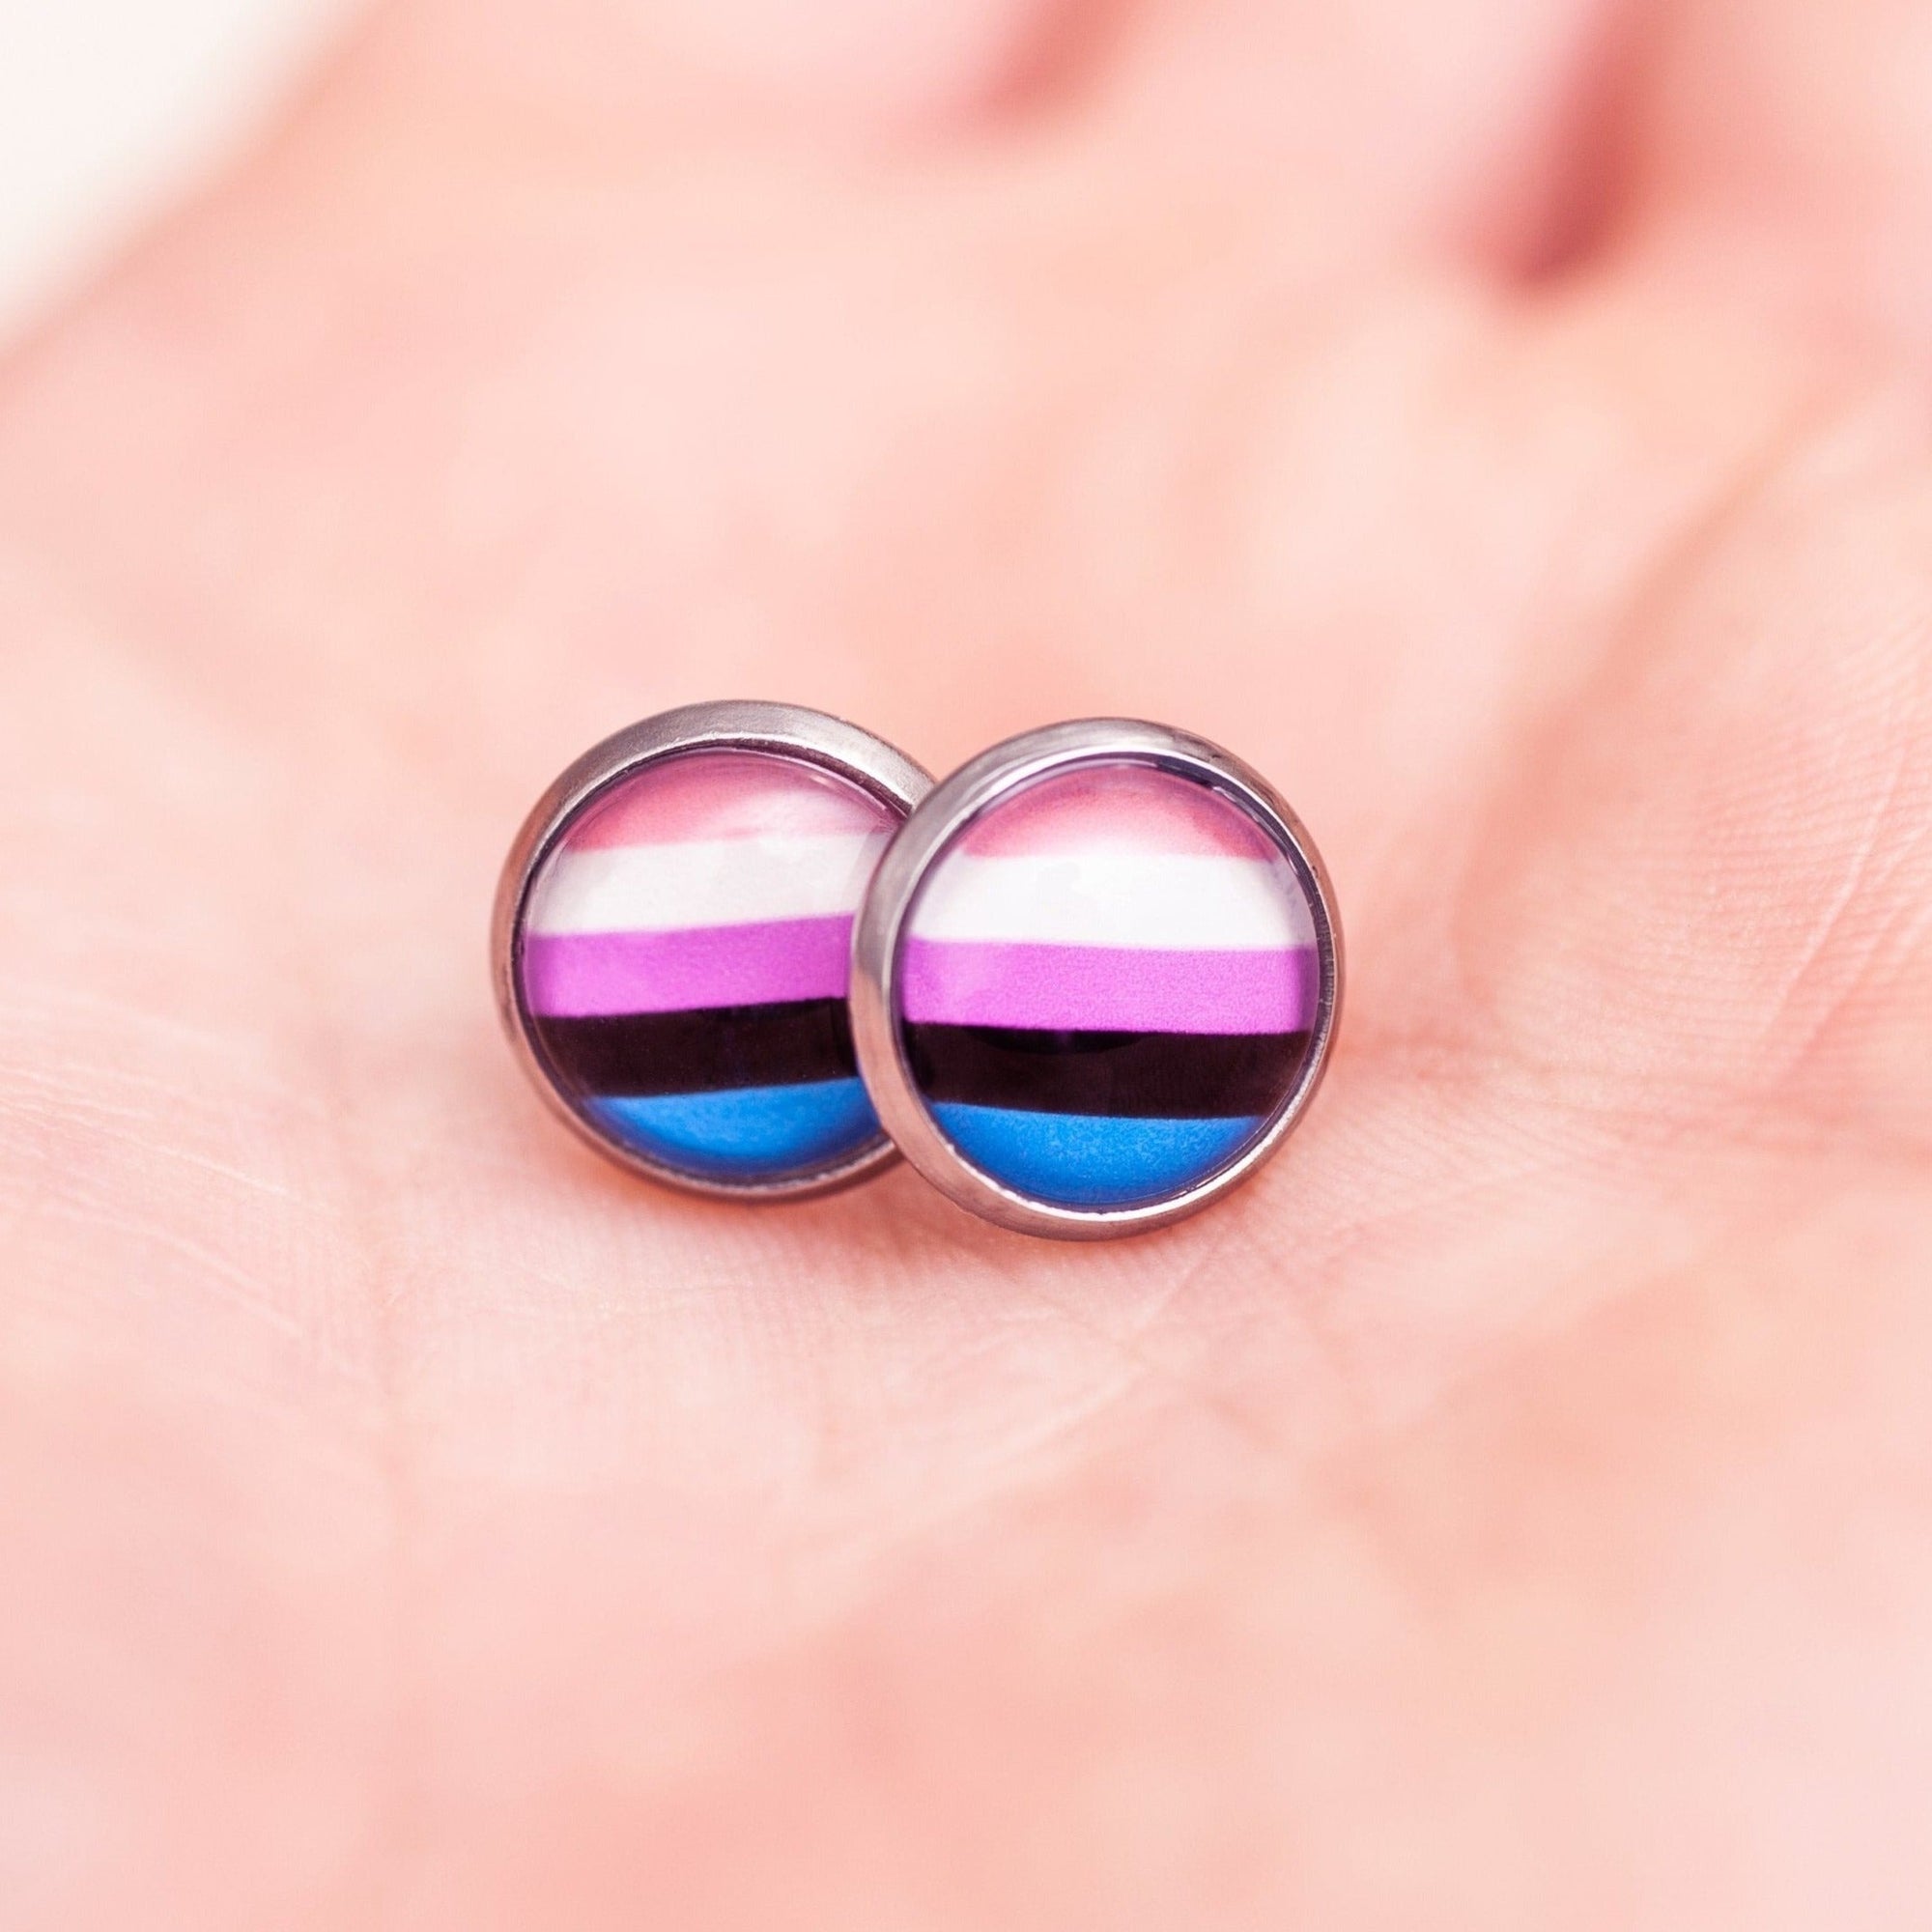 Genderfluid flag pride earrings - stud or dangle